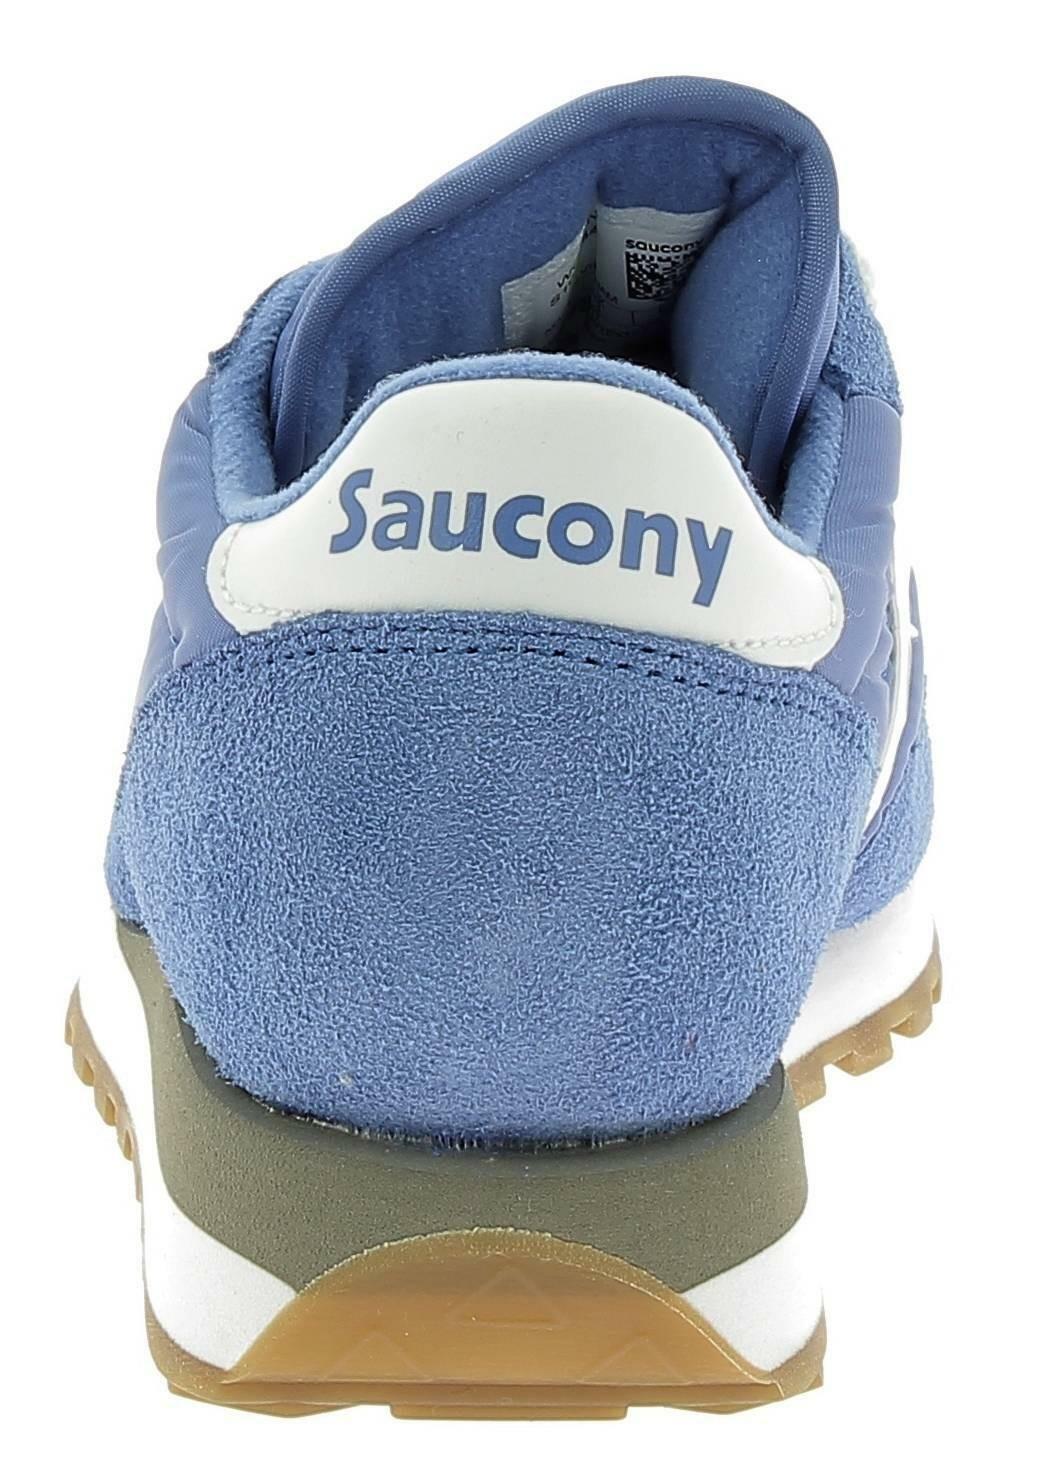 saucony saucony jazz original scarpe sportive donna azzurre s1044442